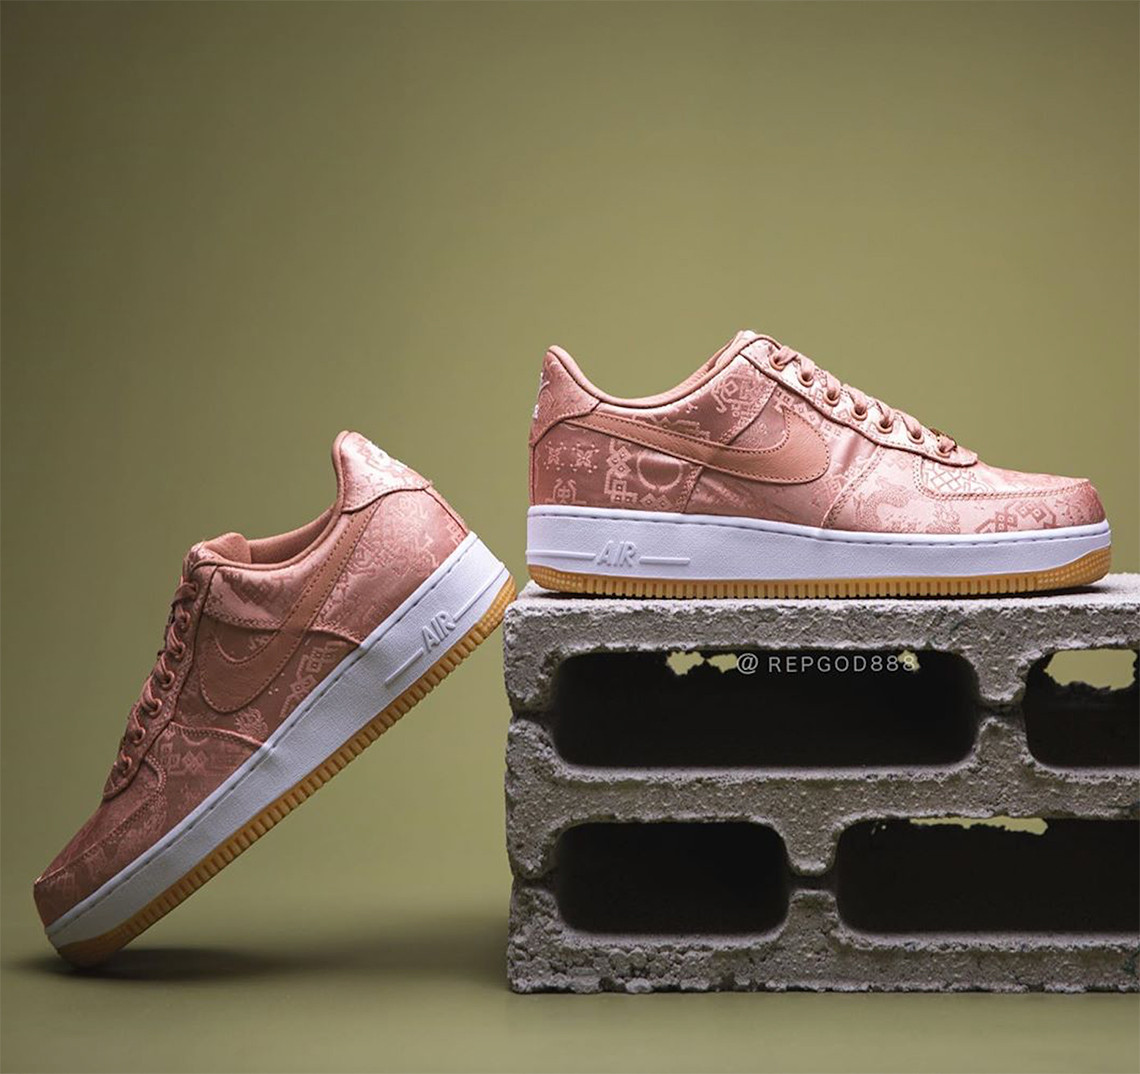 CLOT x Nike AF1 Low phối màu “Rose Gold” là sản phẩm được các tín đồ giày thể thao yêu mến nhất hiện nay. Với tông màu vàng hồng độc đáo và thiết kế tinh xảo, đôi giày này sẽ làm bạn thích thú ngay từ cái nhìn đầu tiên. Hãy cùng khám phá hình ảnh chi tiết của đôi giày CLOT x Nike AF1 Low để có trải nghiệm thật tuyệt vời.